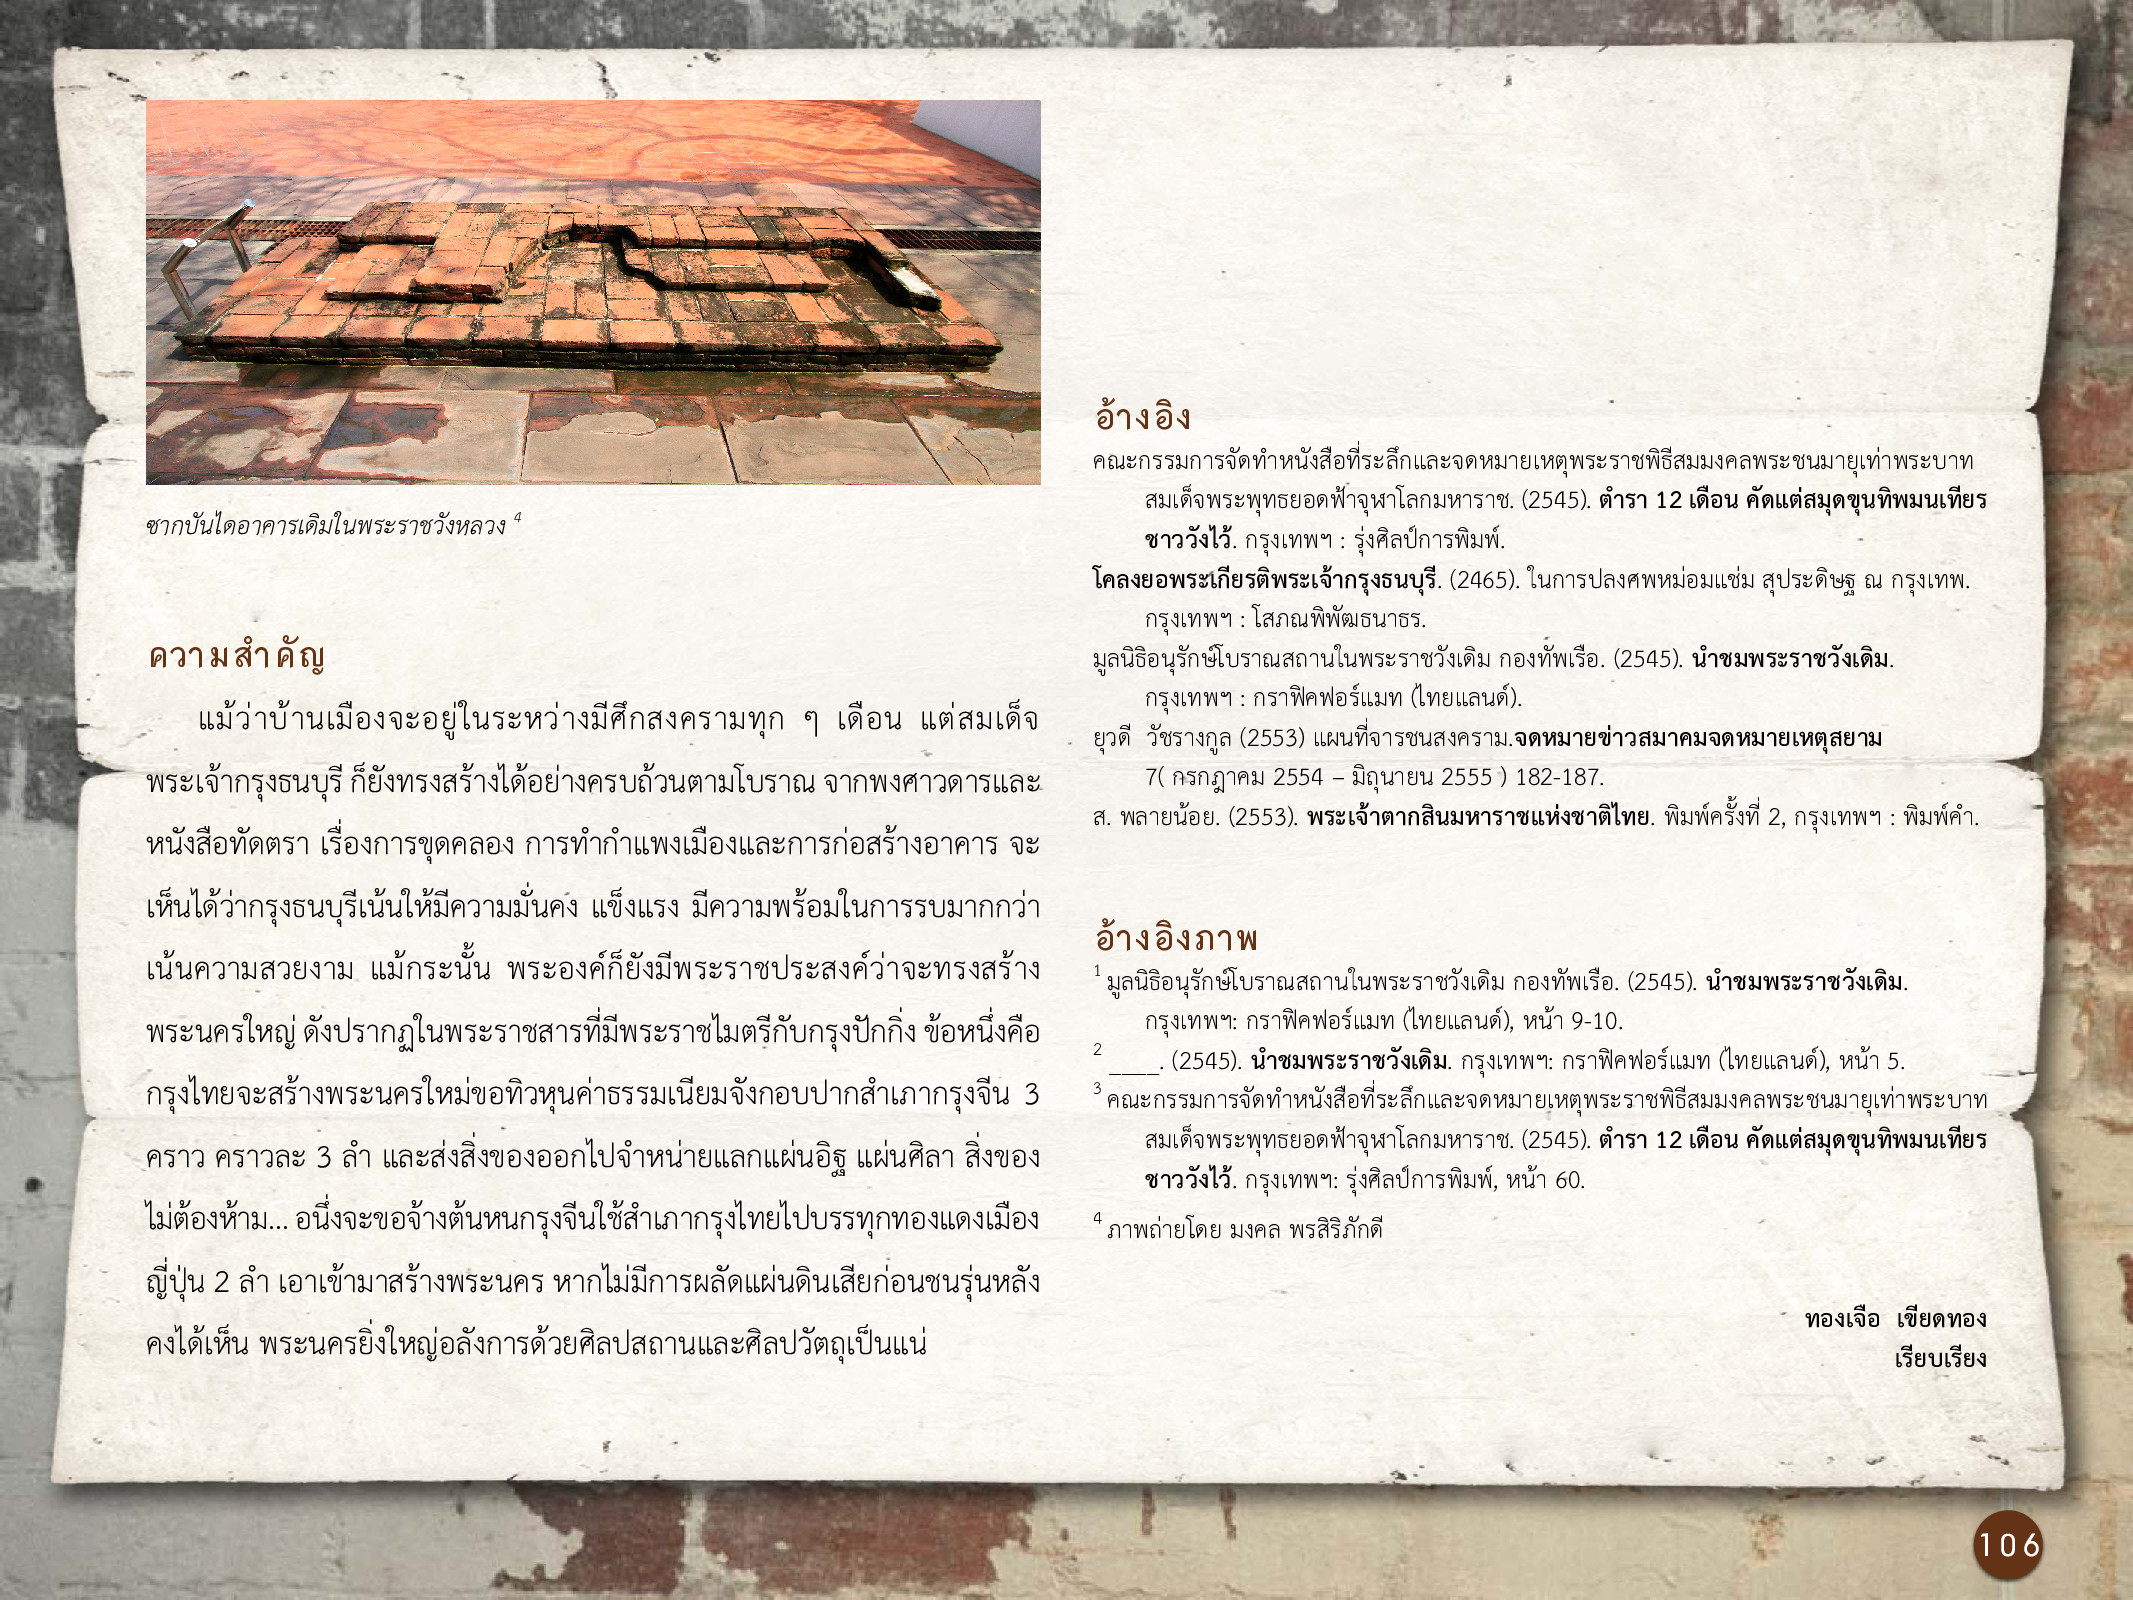 ศิลปกรรมกรุงธนบุรี ./images/encyclopedia/106.jpg